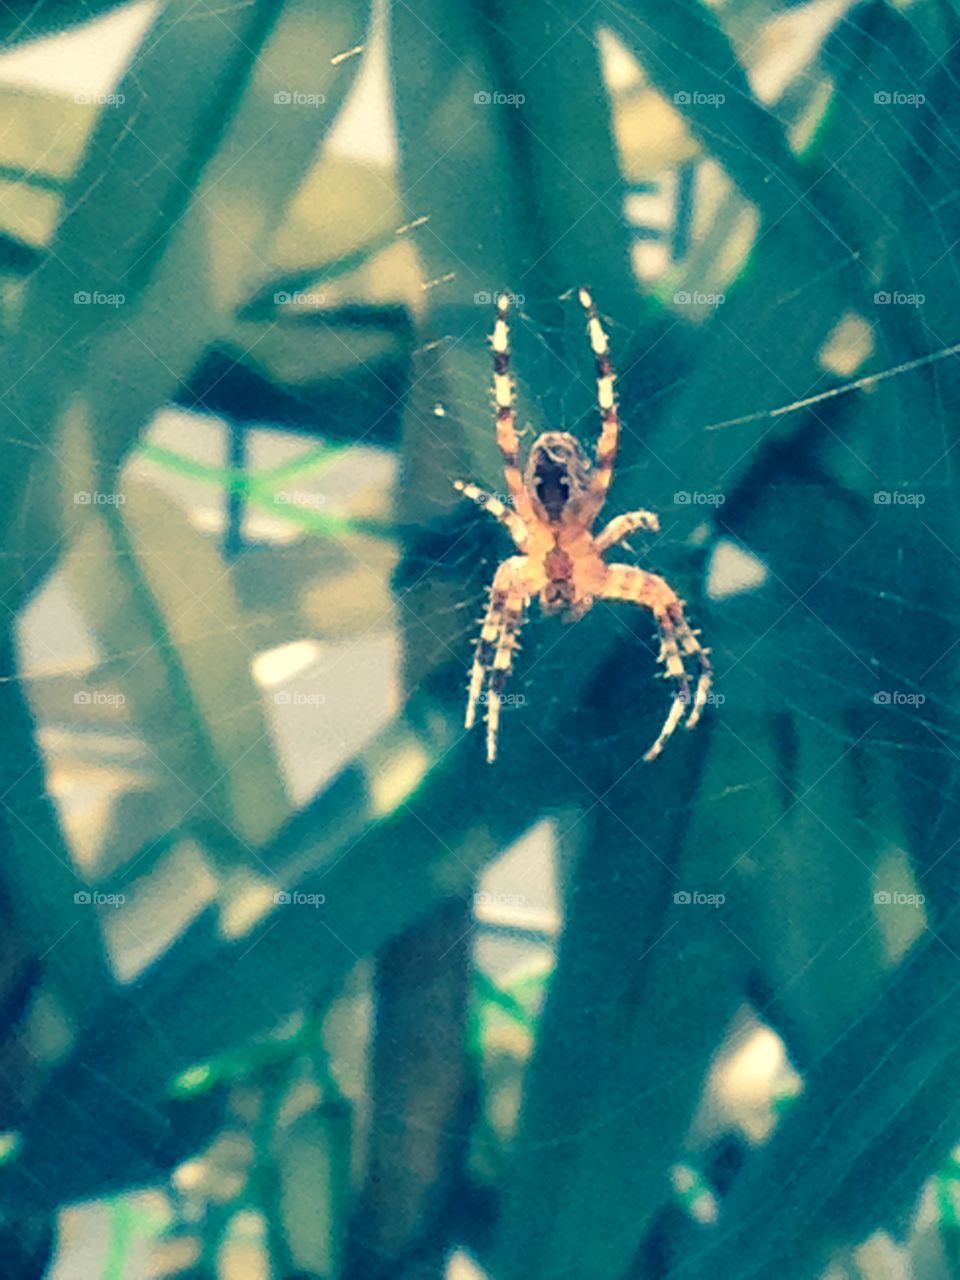 Scary Spider in my garden